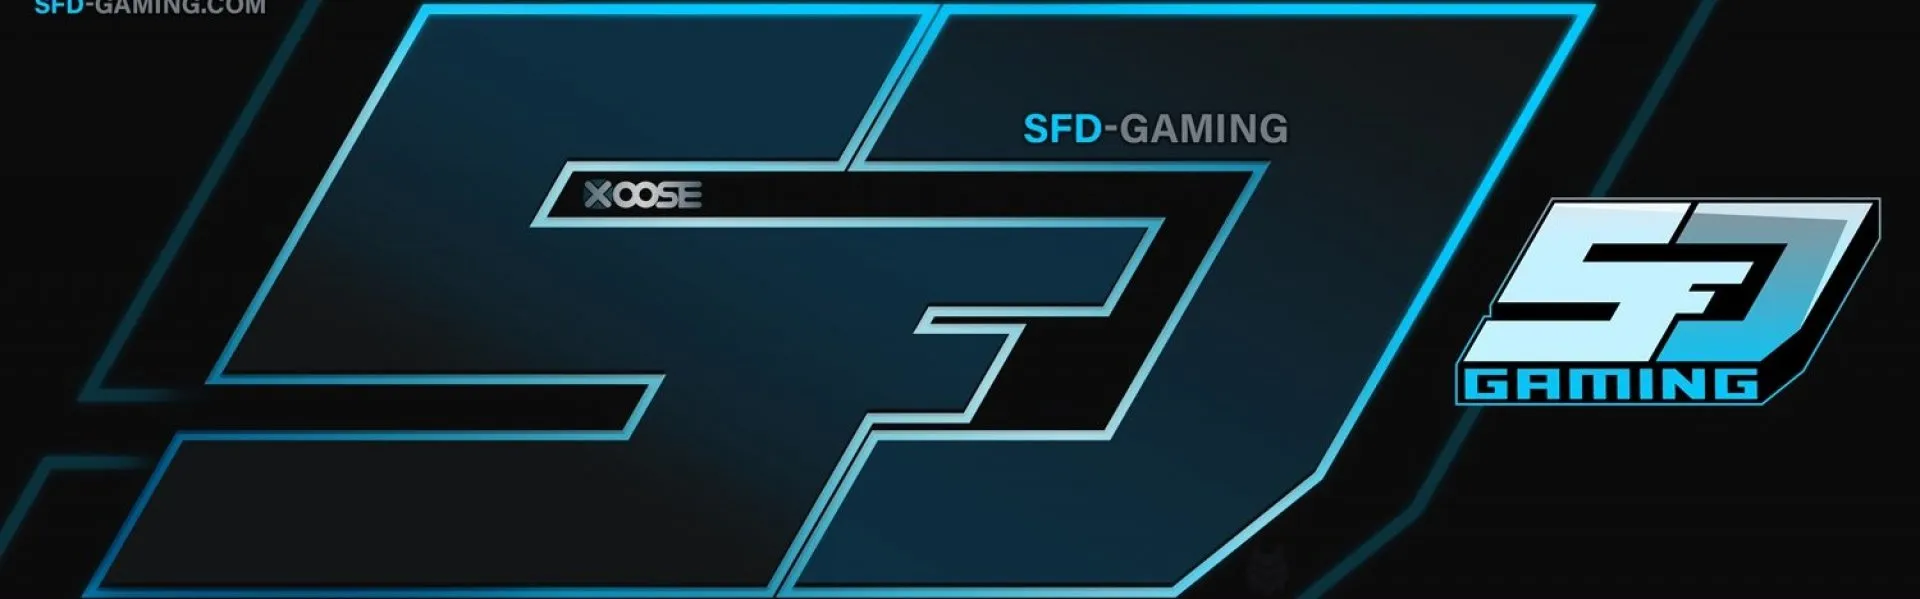 SFD-Gaming banner